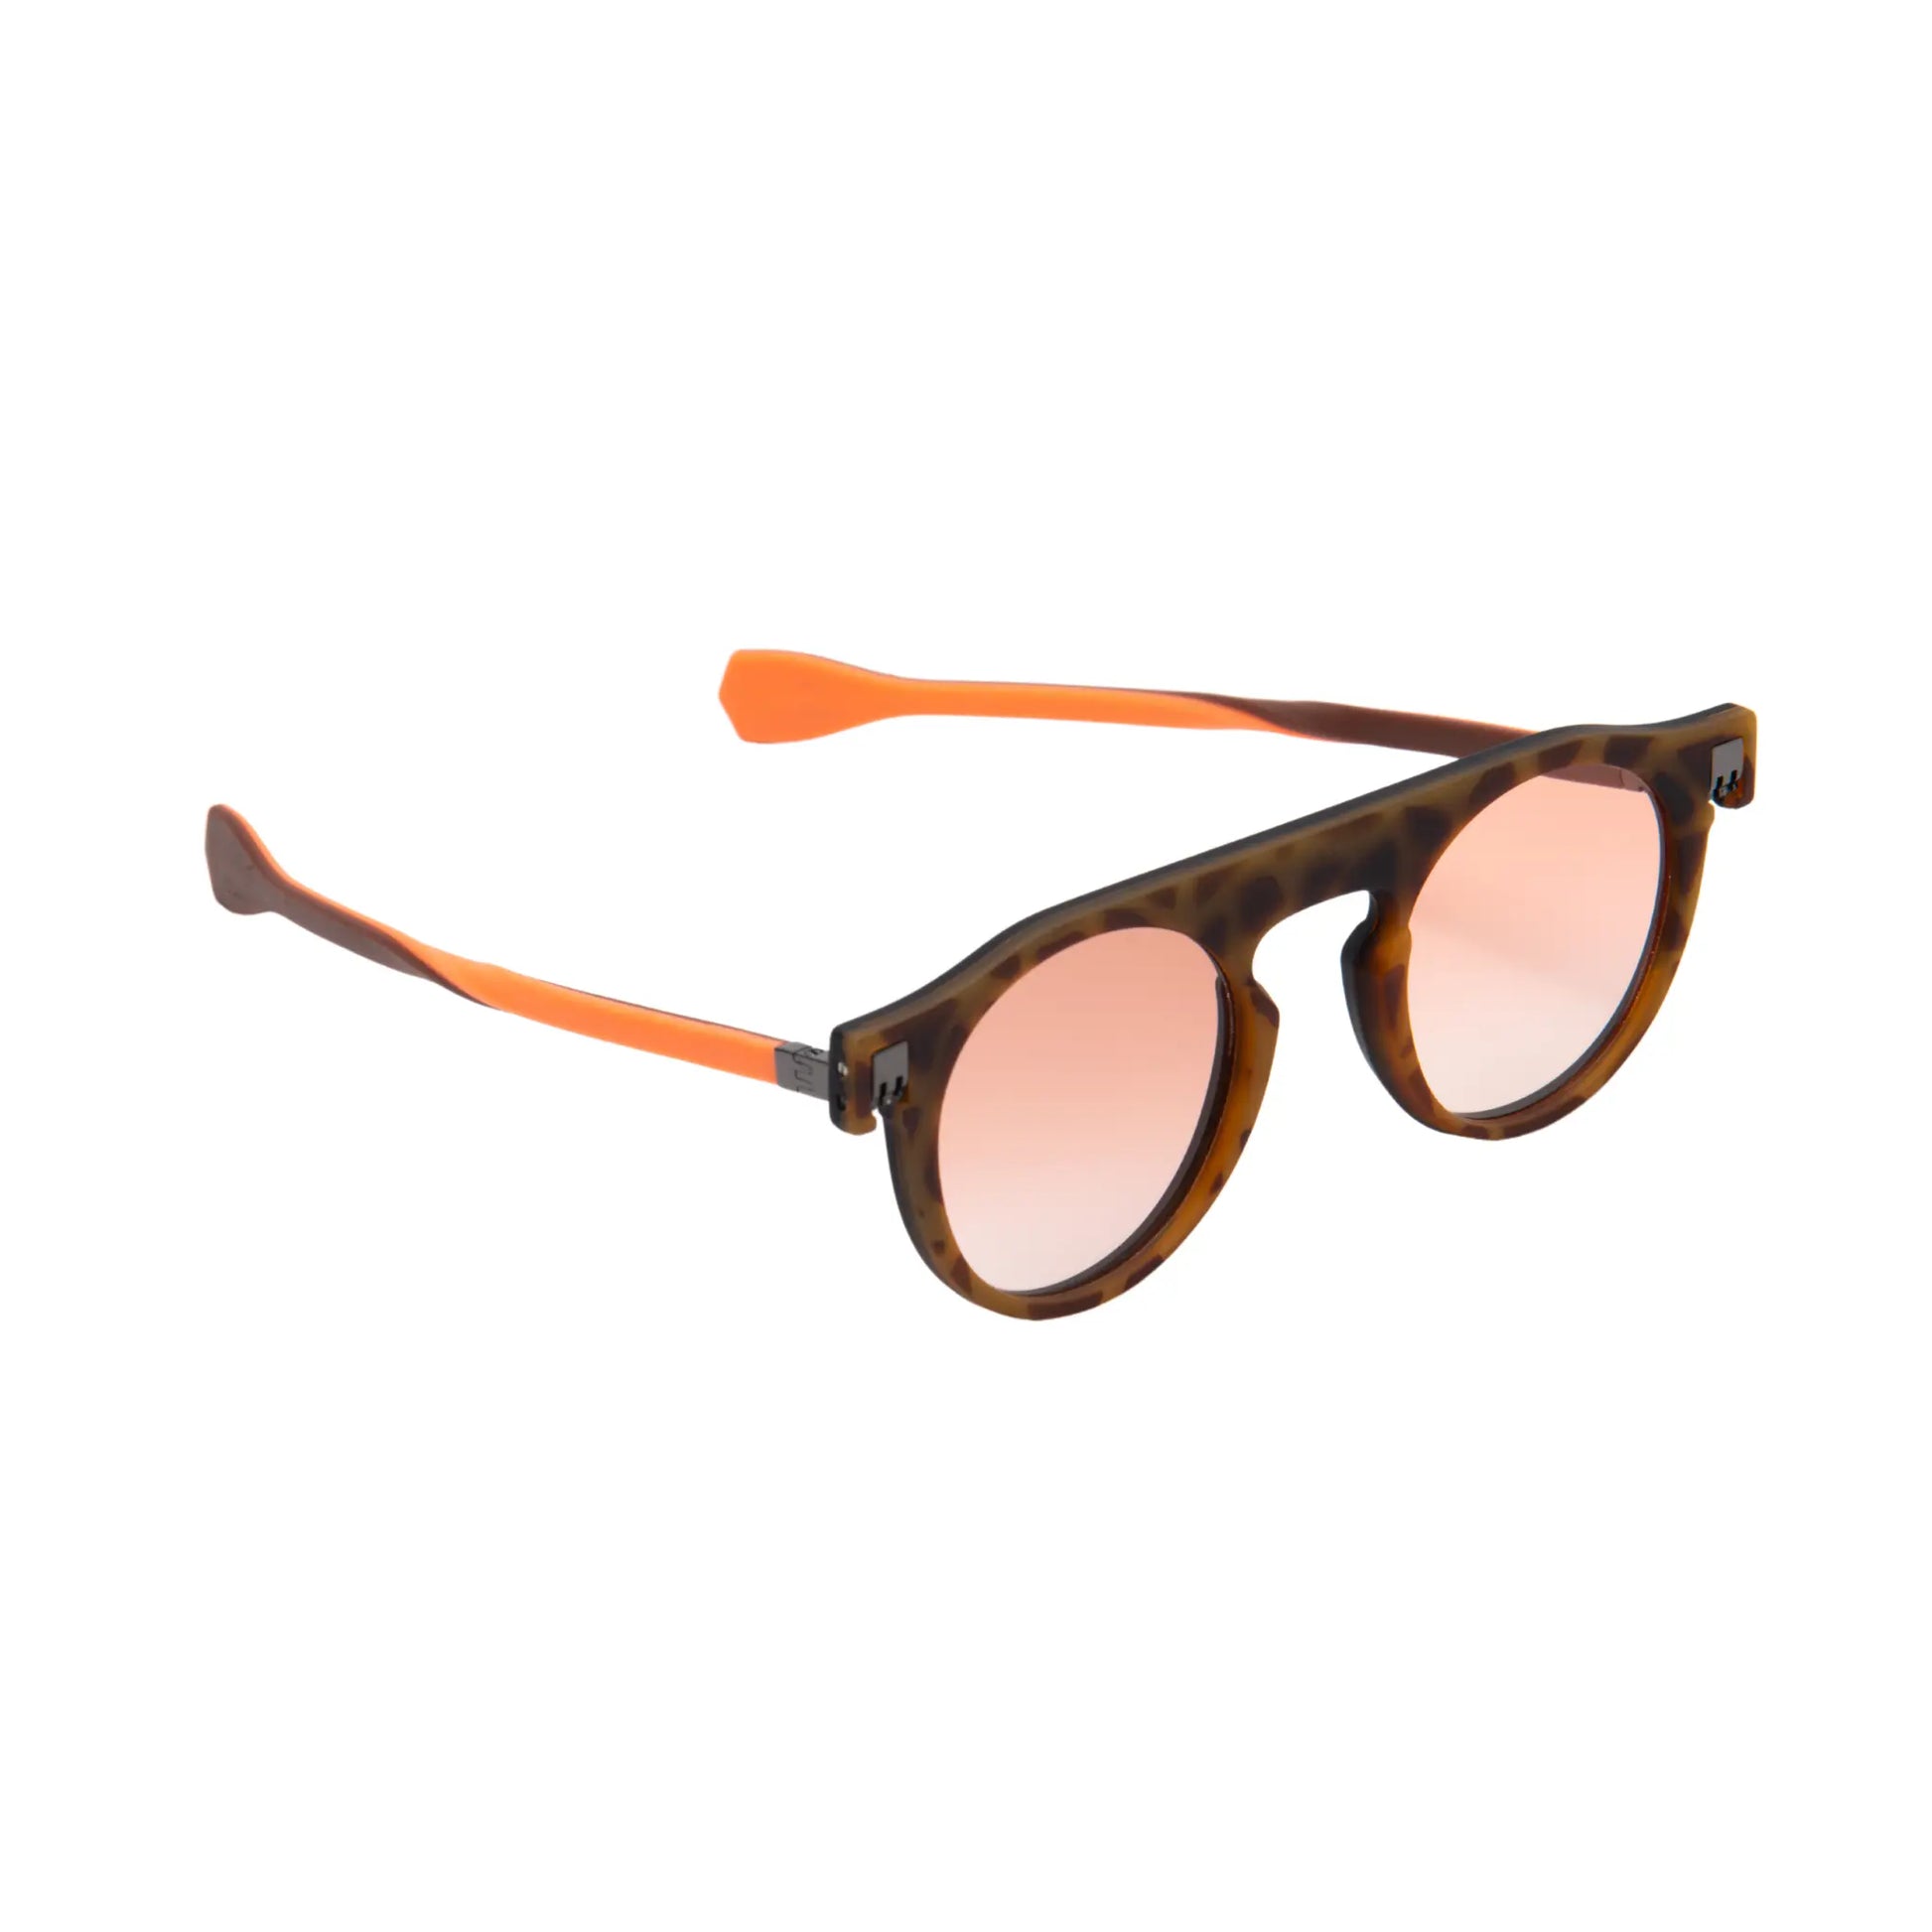 Reverso sunglasses Havana/black & orange reversible & ultra light side view